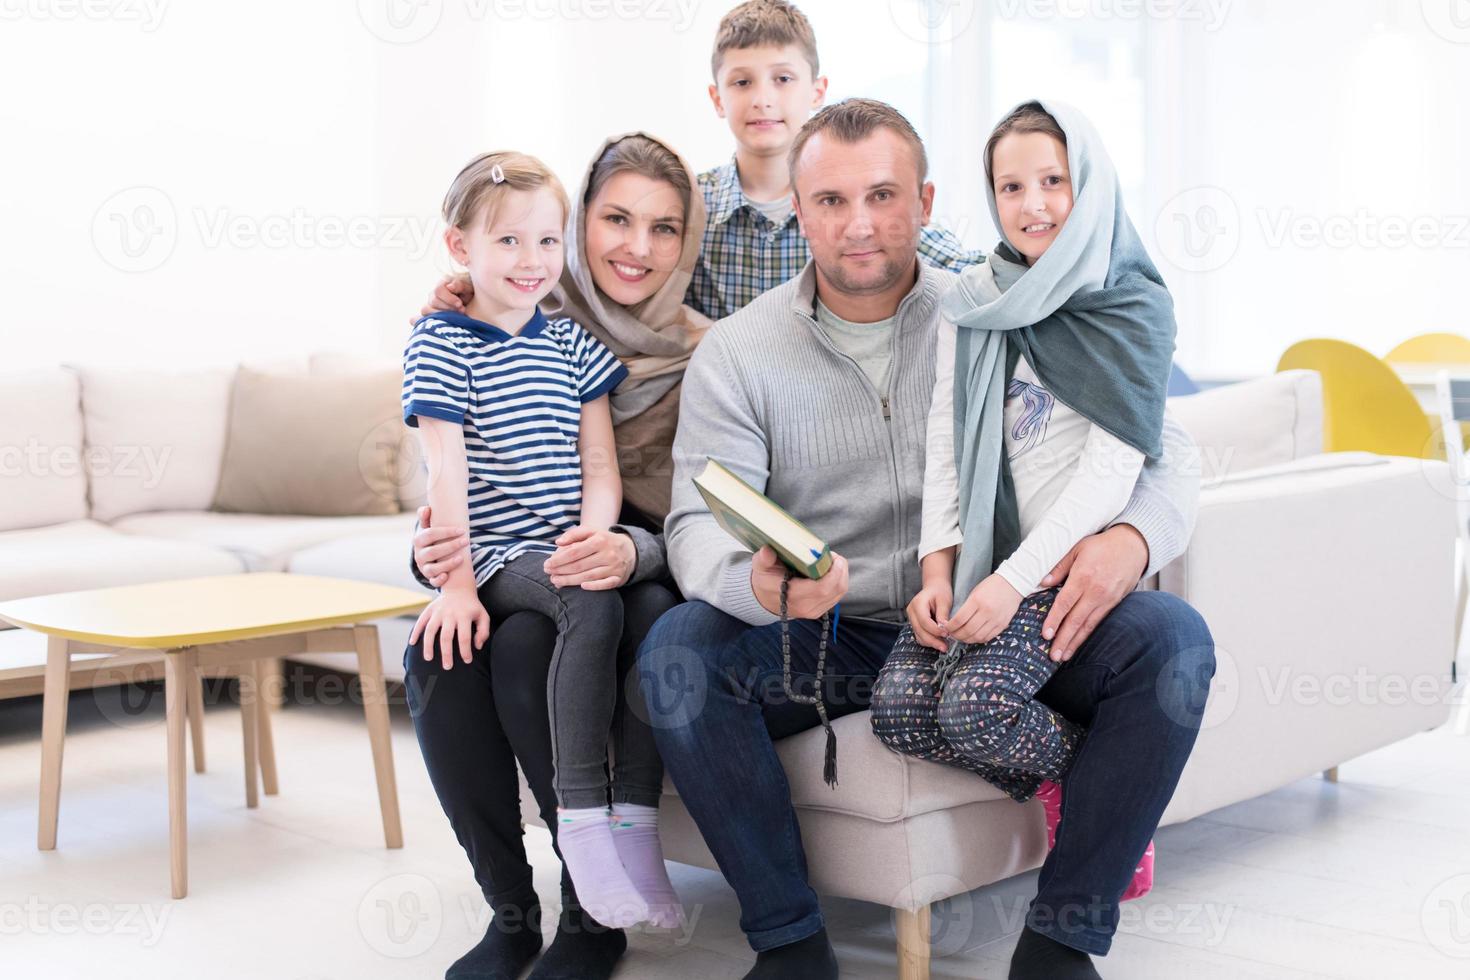 portrait de jeune famille musulmane moderne heureuse photo